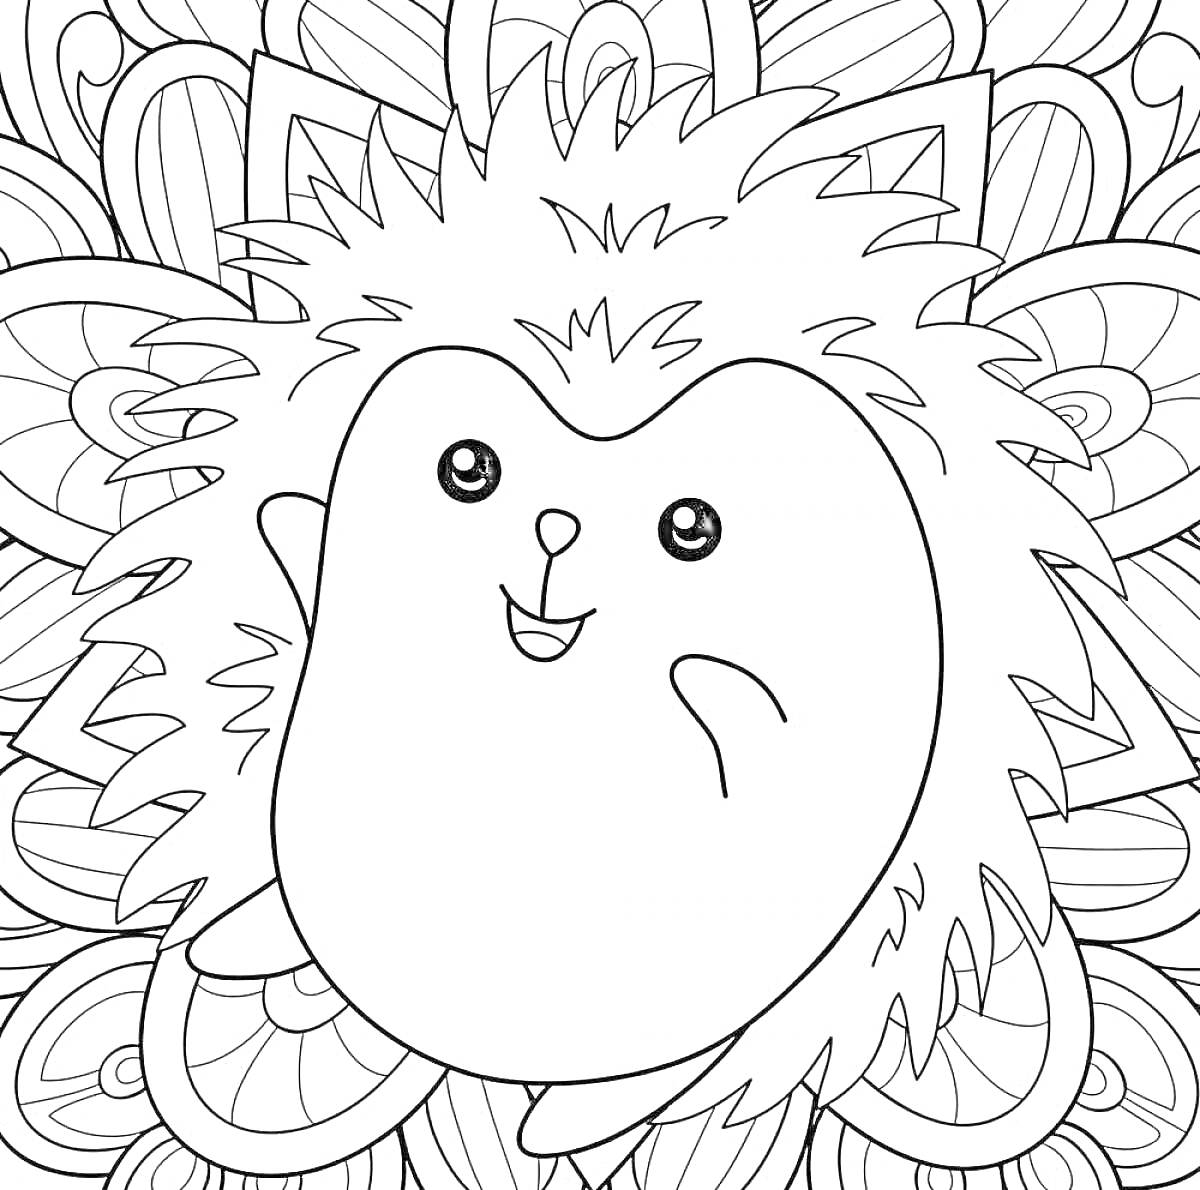 Раскраска Ёжик антистресс с узорным фоном. Ёжик, листья, цветочные элементы, линии, спирали, волнистые формы